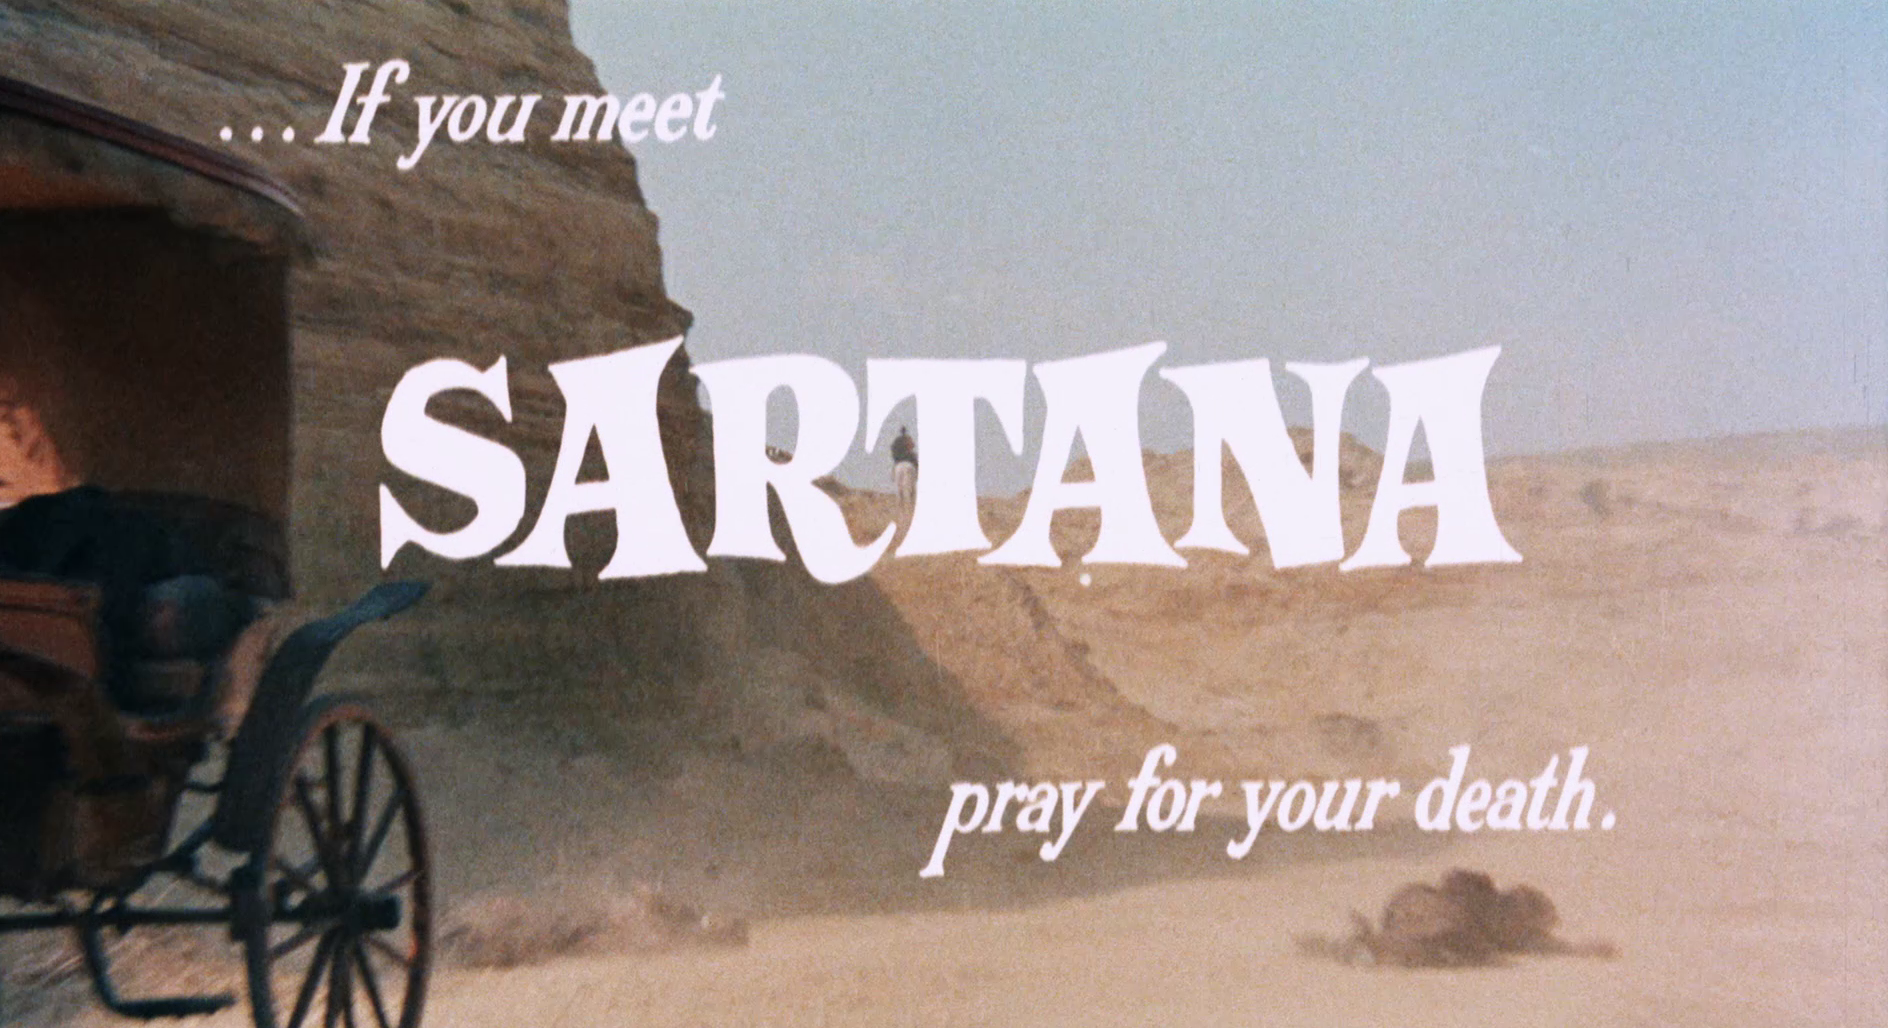 Sartana - Bete um deinen Tod